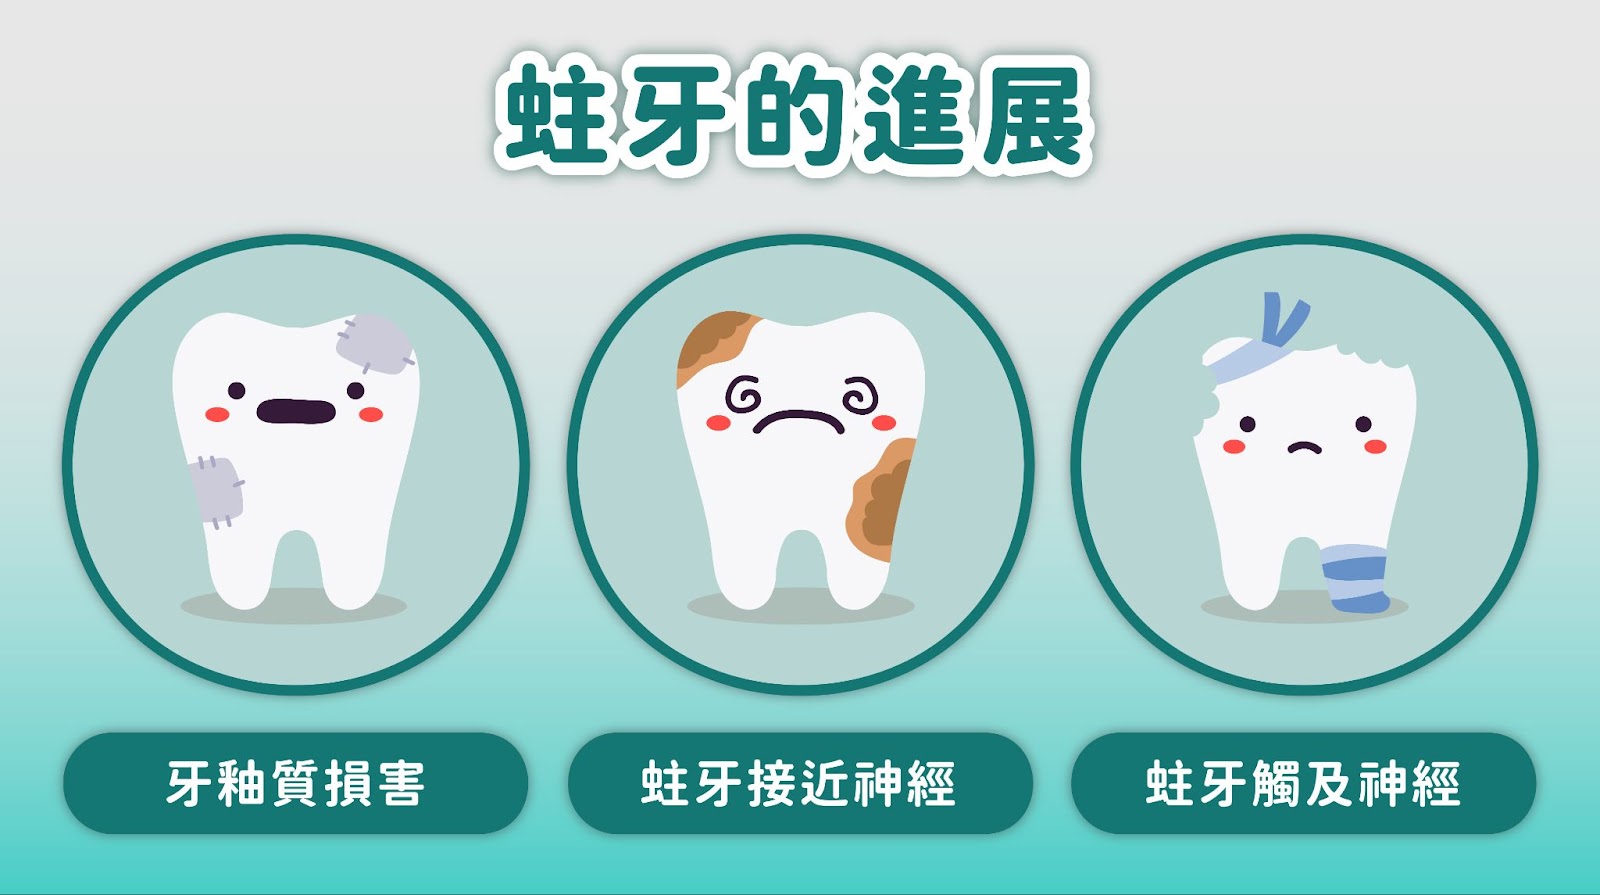 蛀牙，一種常見的口腔健康問題，通常起因於不當的口腔清潔習慣